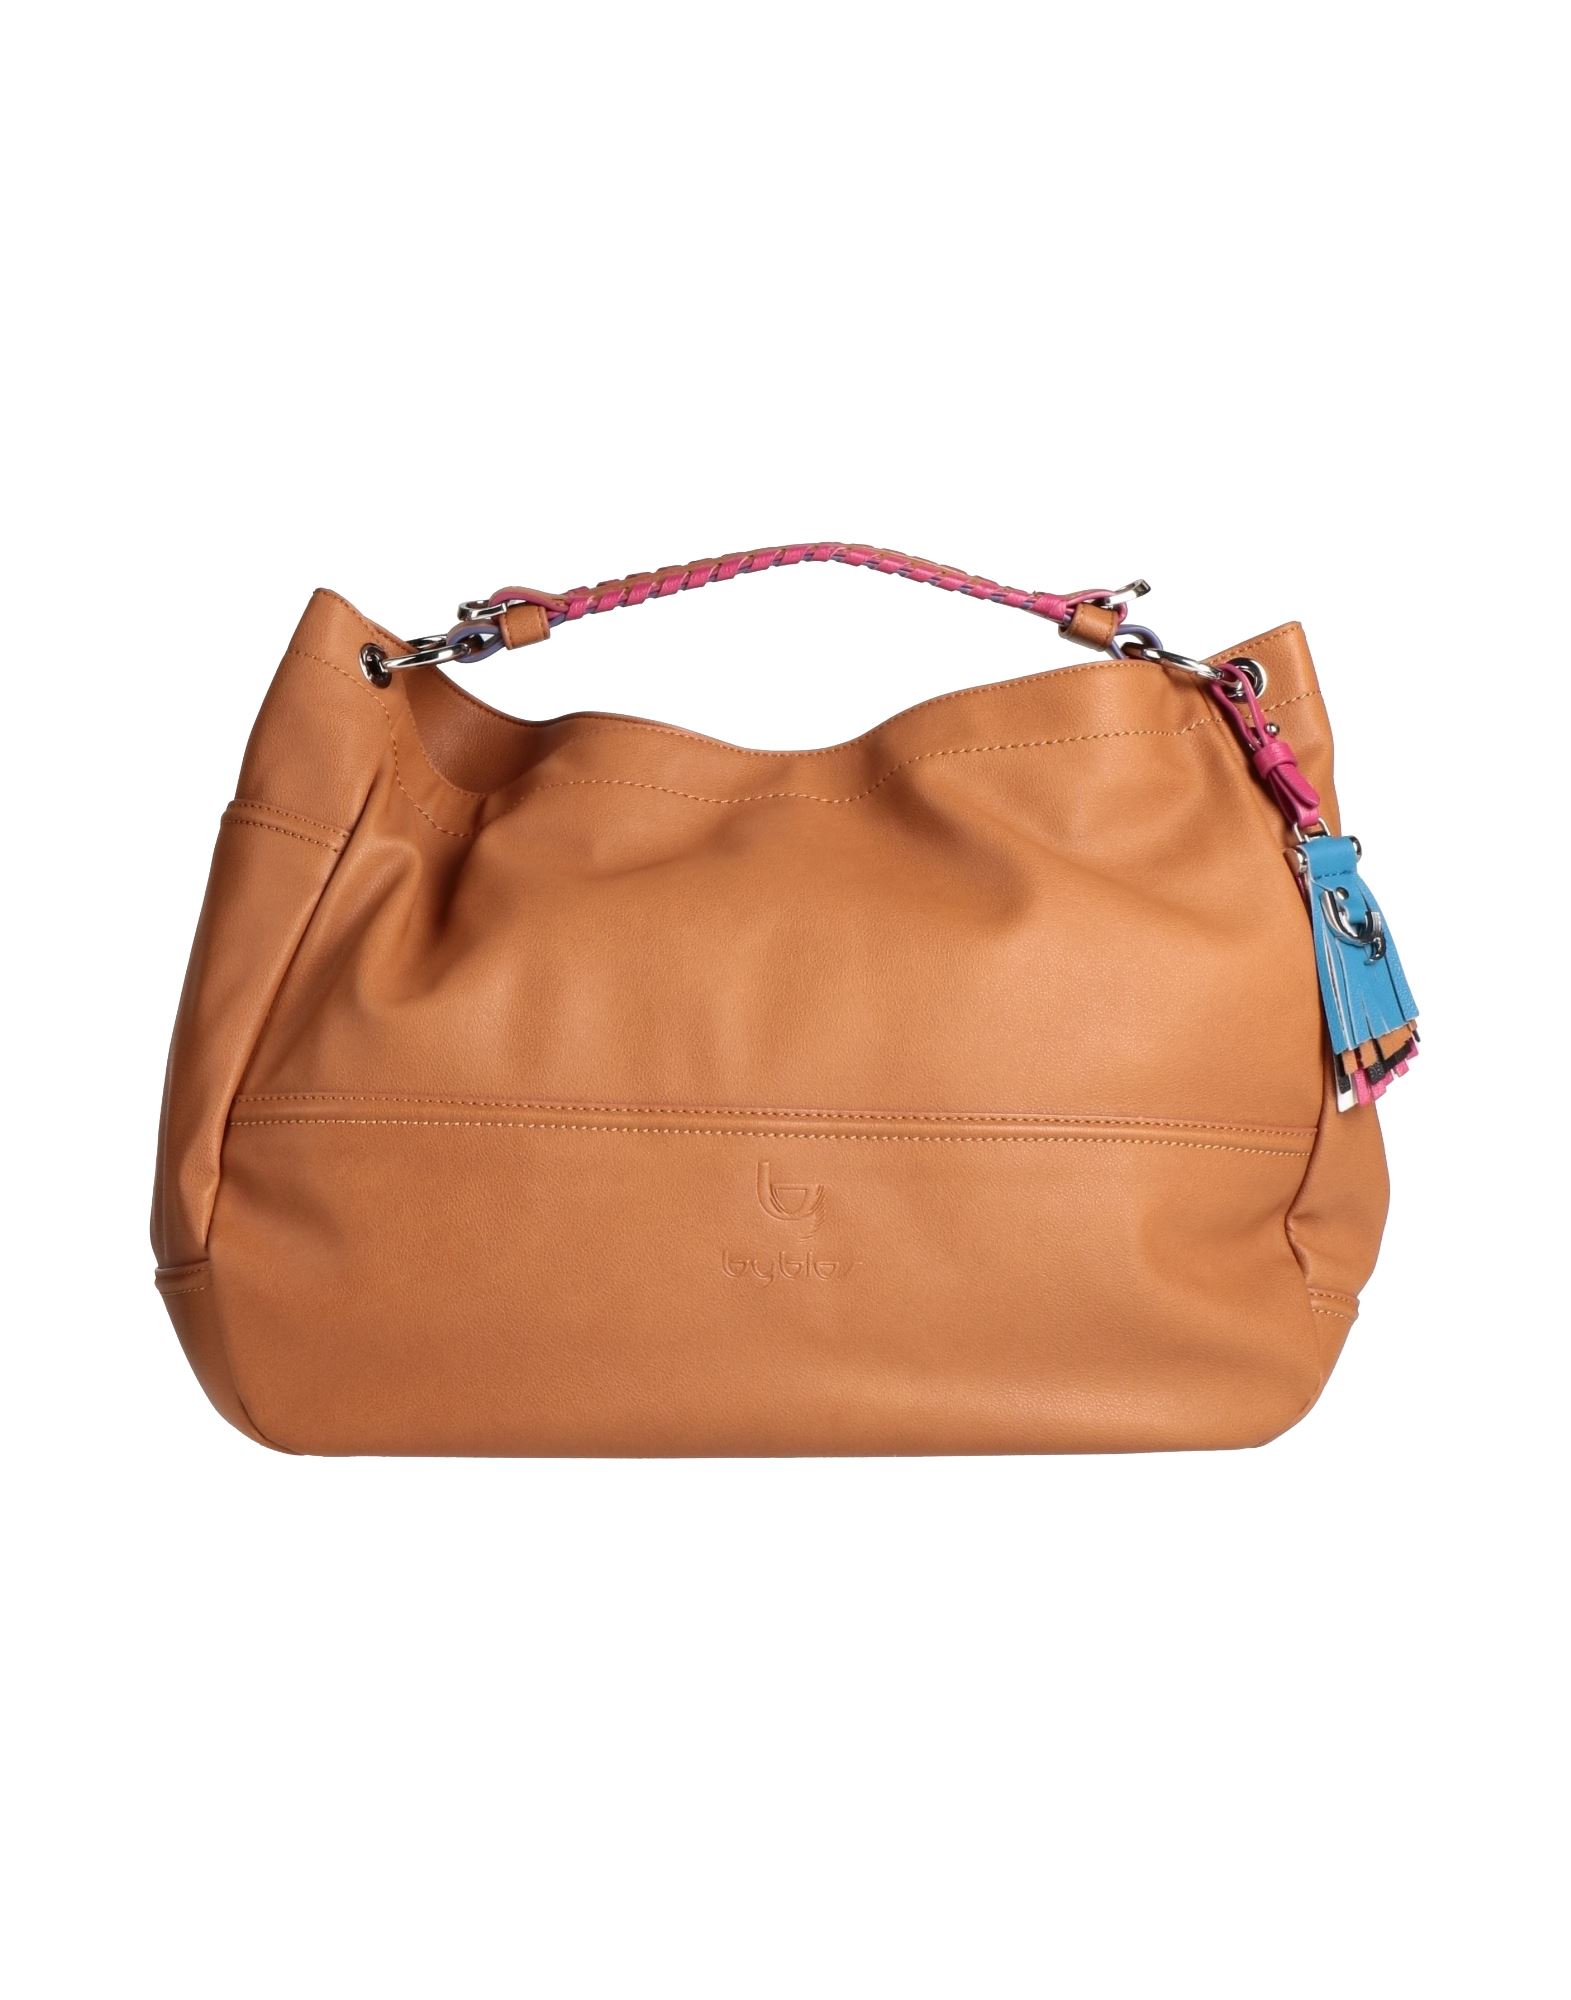 Byblos Handbags In Tan